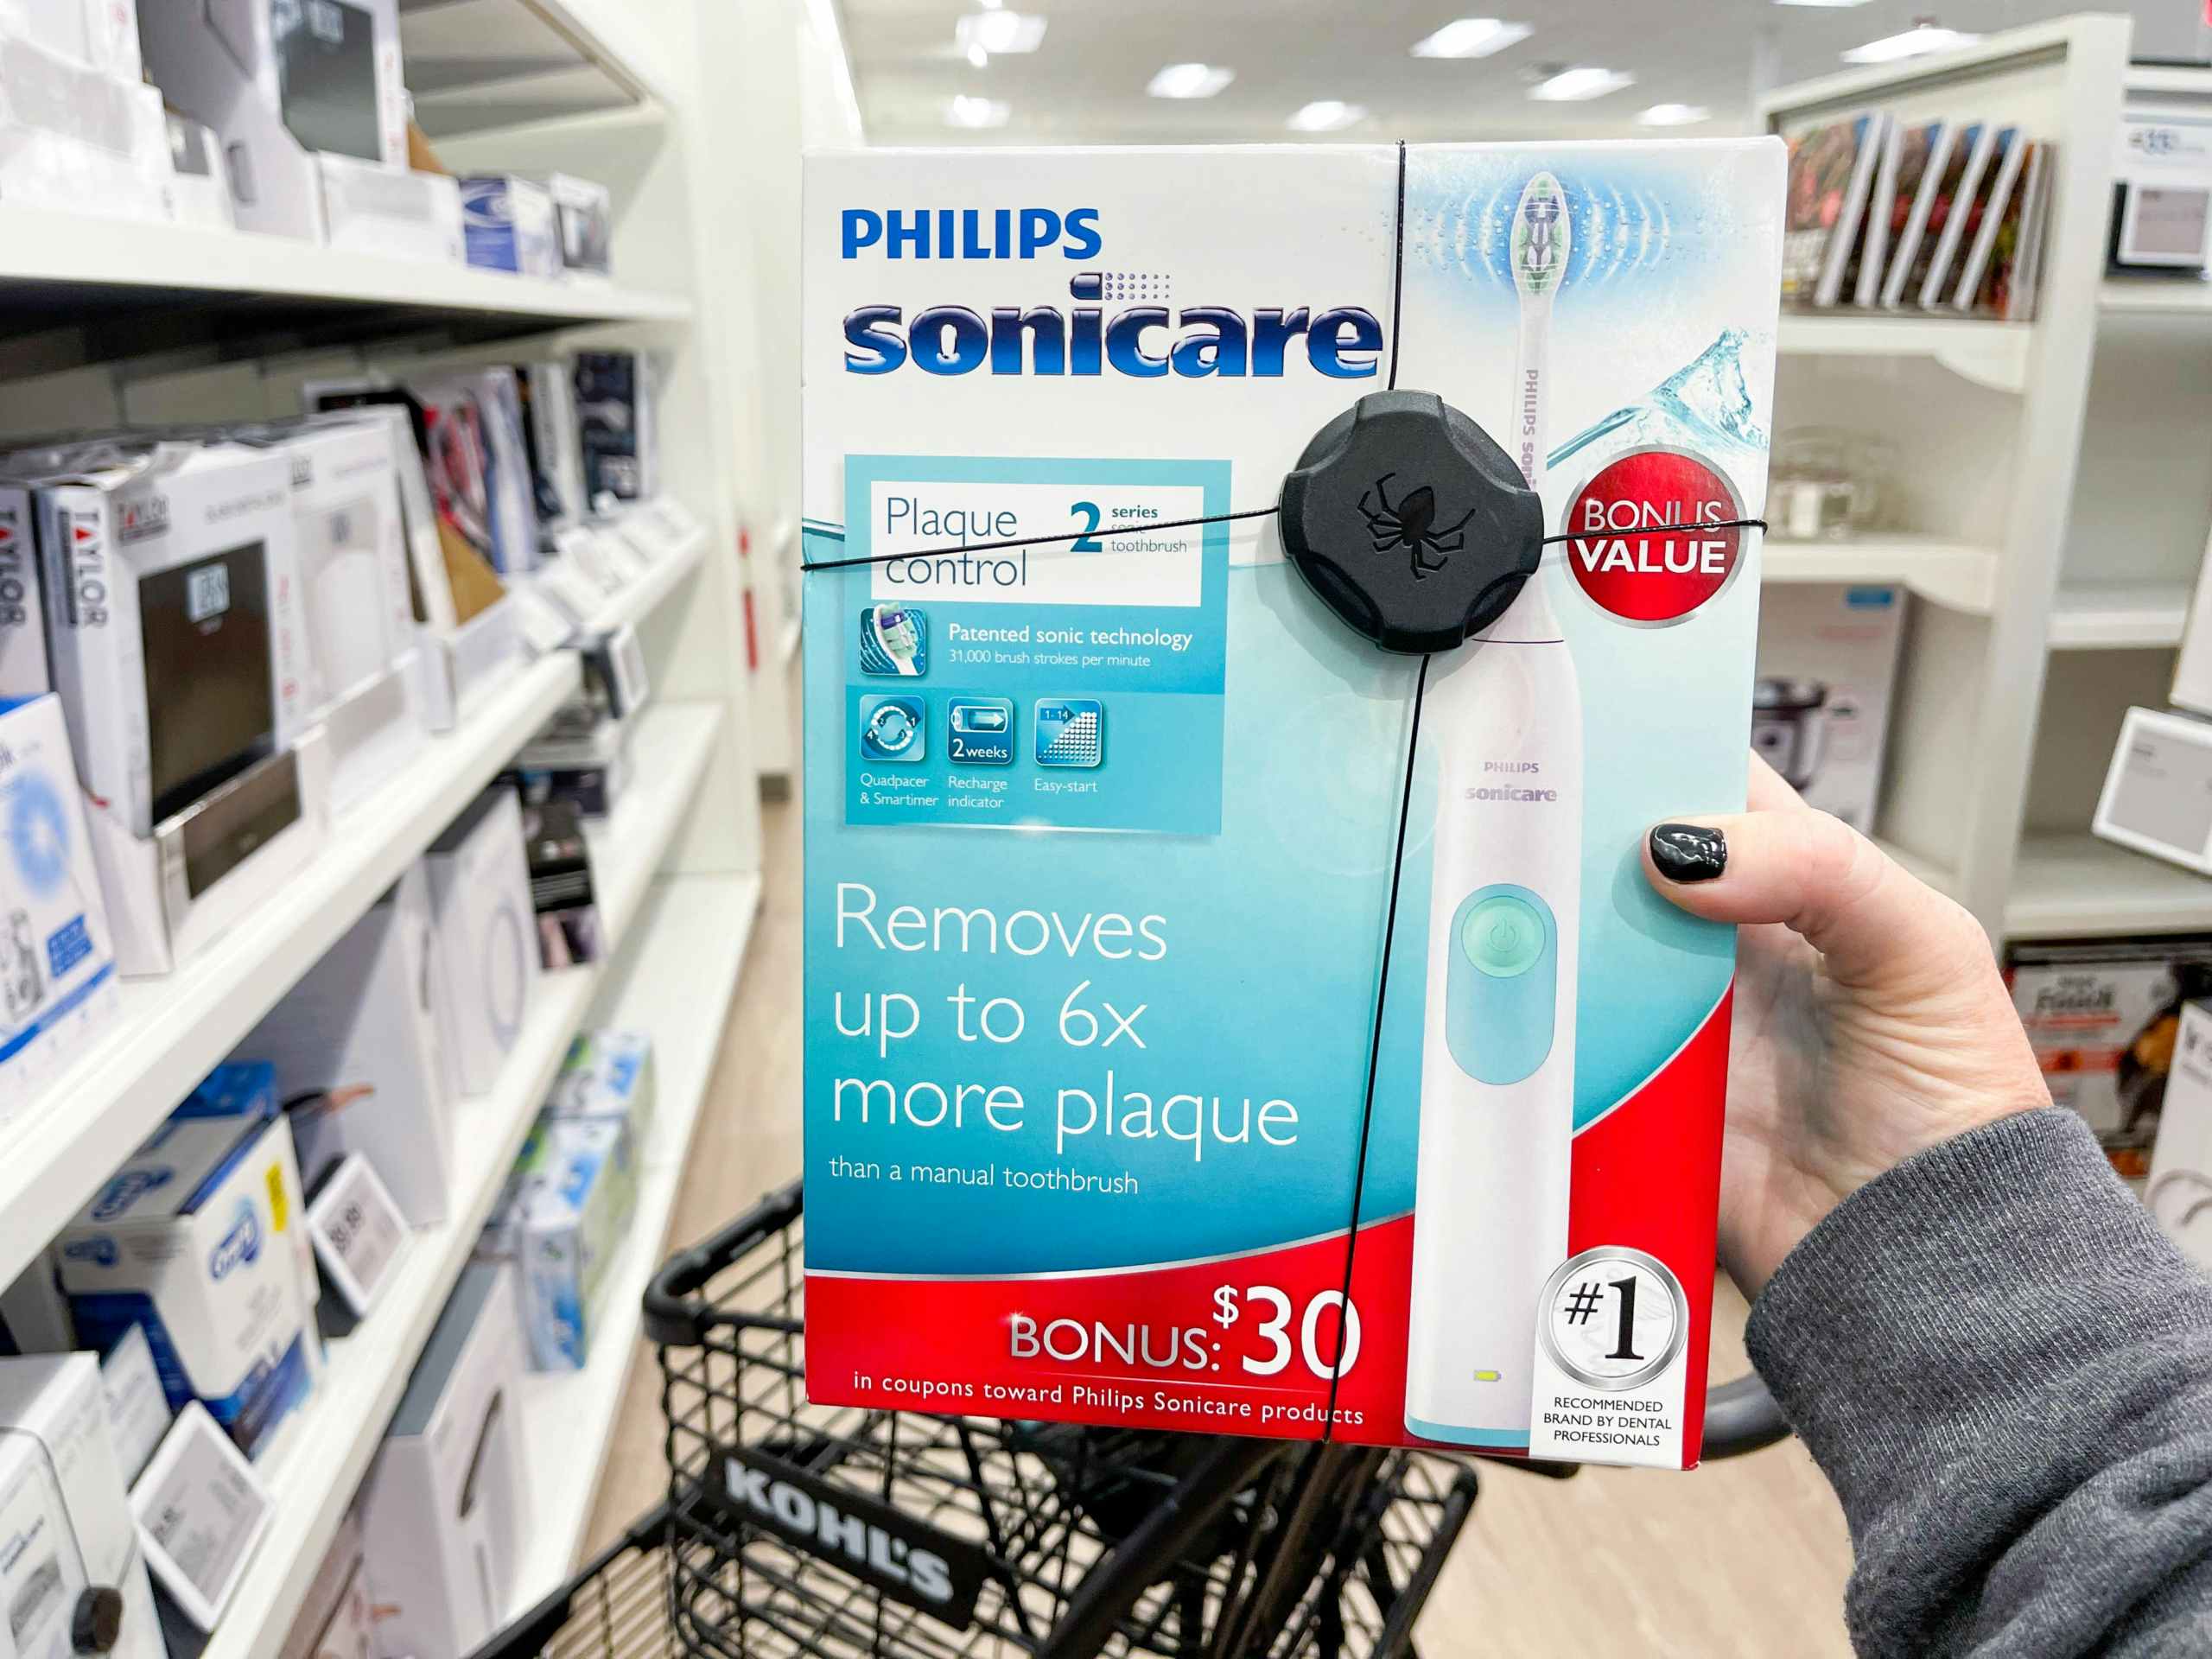 philips sonicare toothbrush near kohls cart